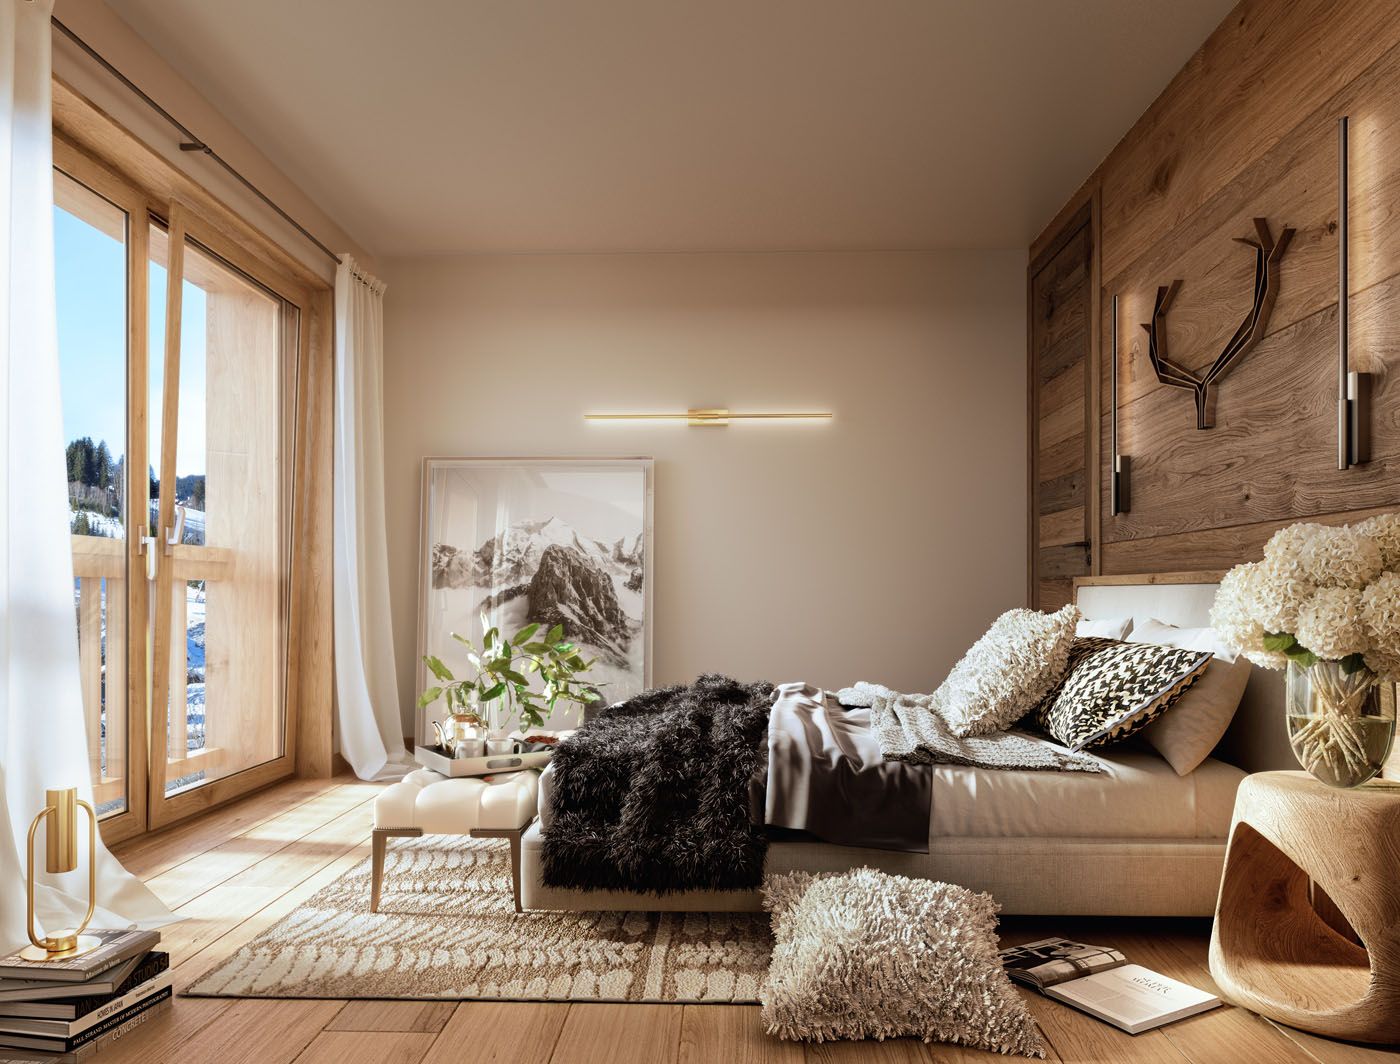 Appartement 1 chambre à vendre à Portes du Soleil, Alpes françaises